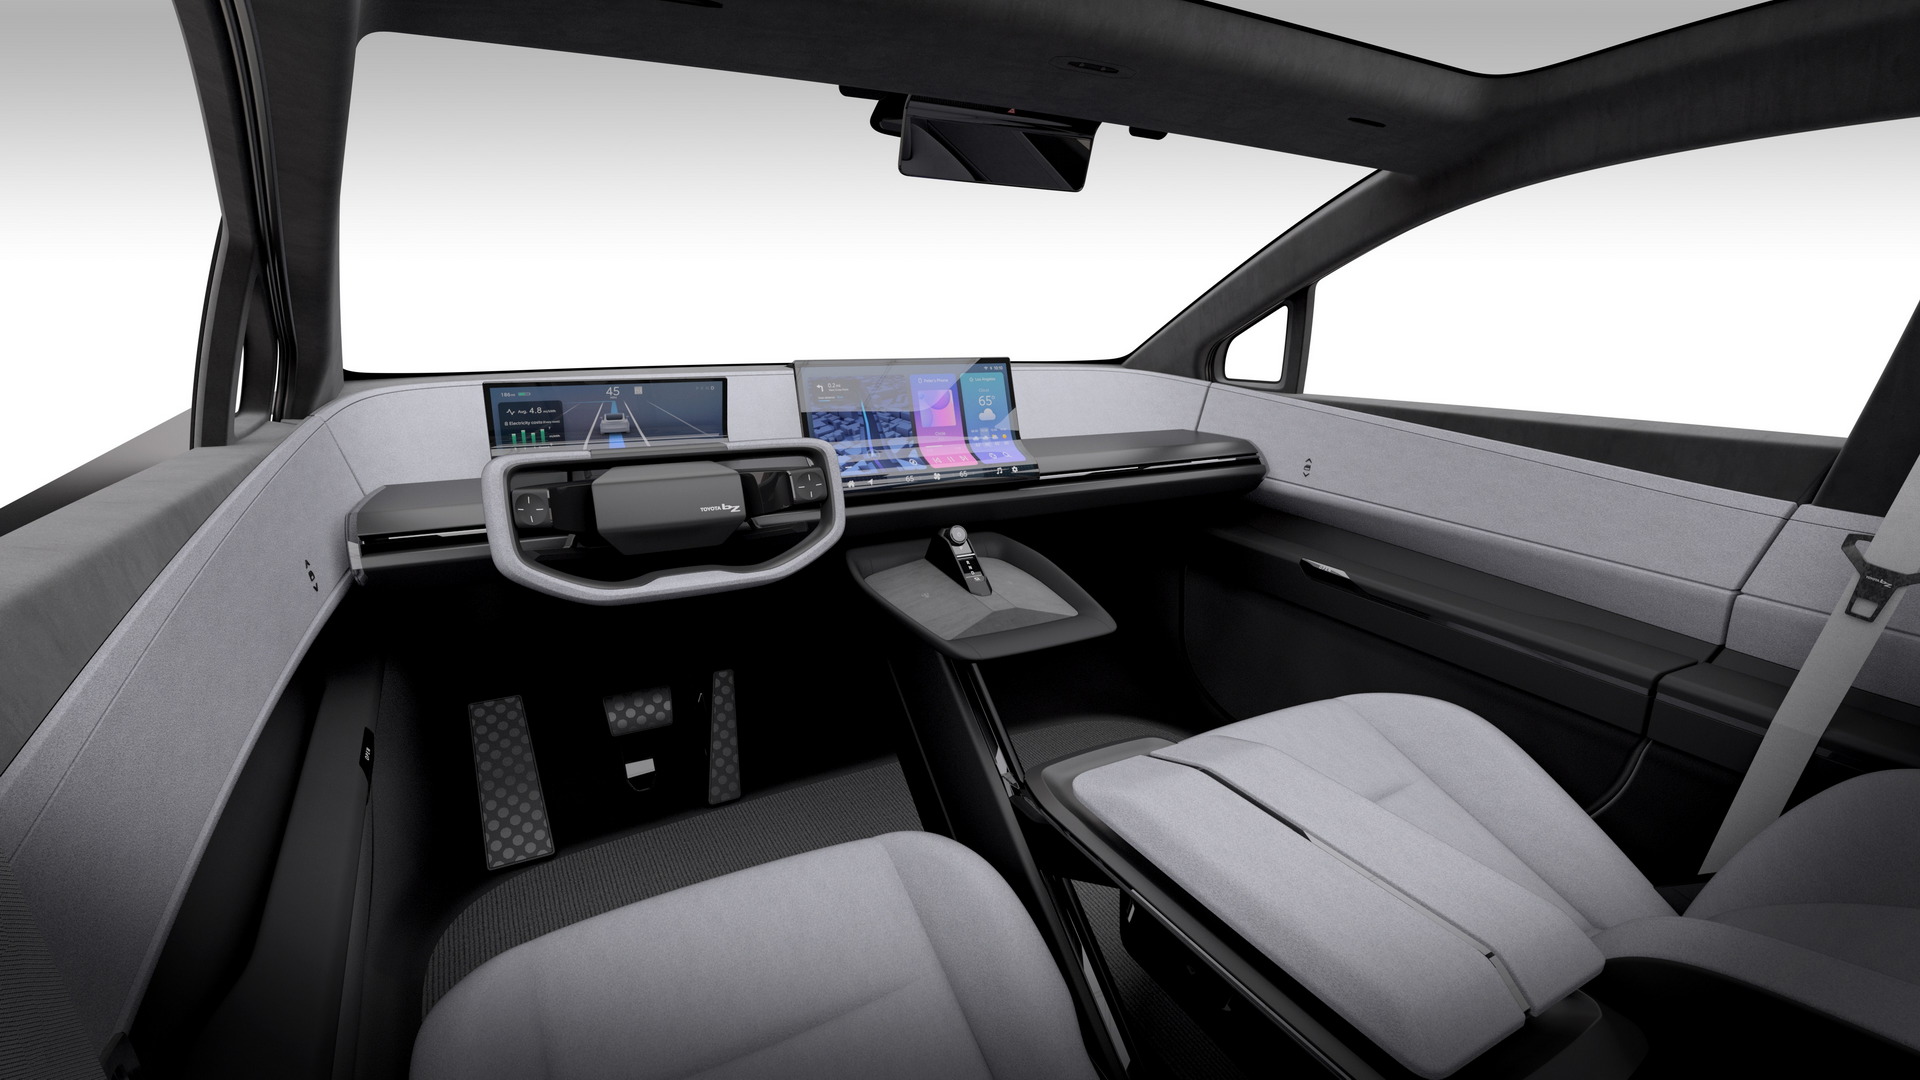 تدشين تويوتا bZ كومباكت SUV الكهربائية الجديدة كلياً بتصميم انسيابي وداخلية عصرية 5